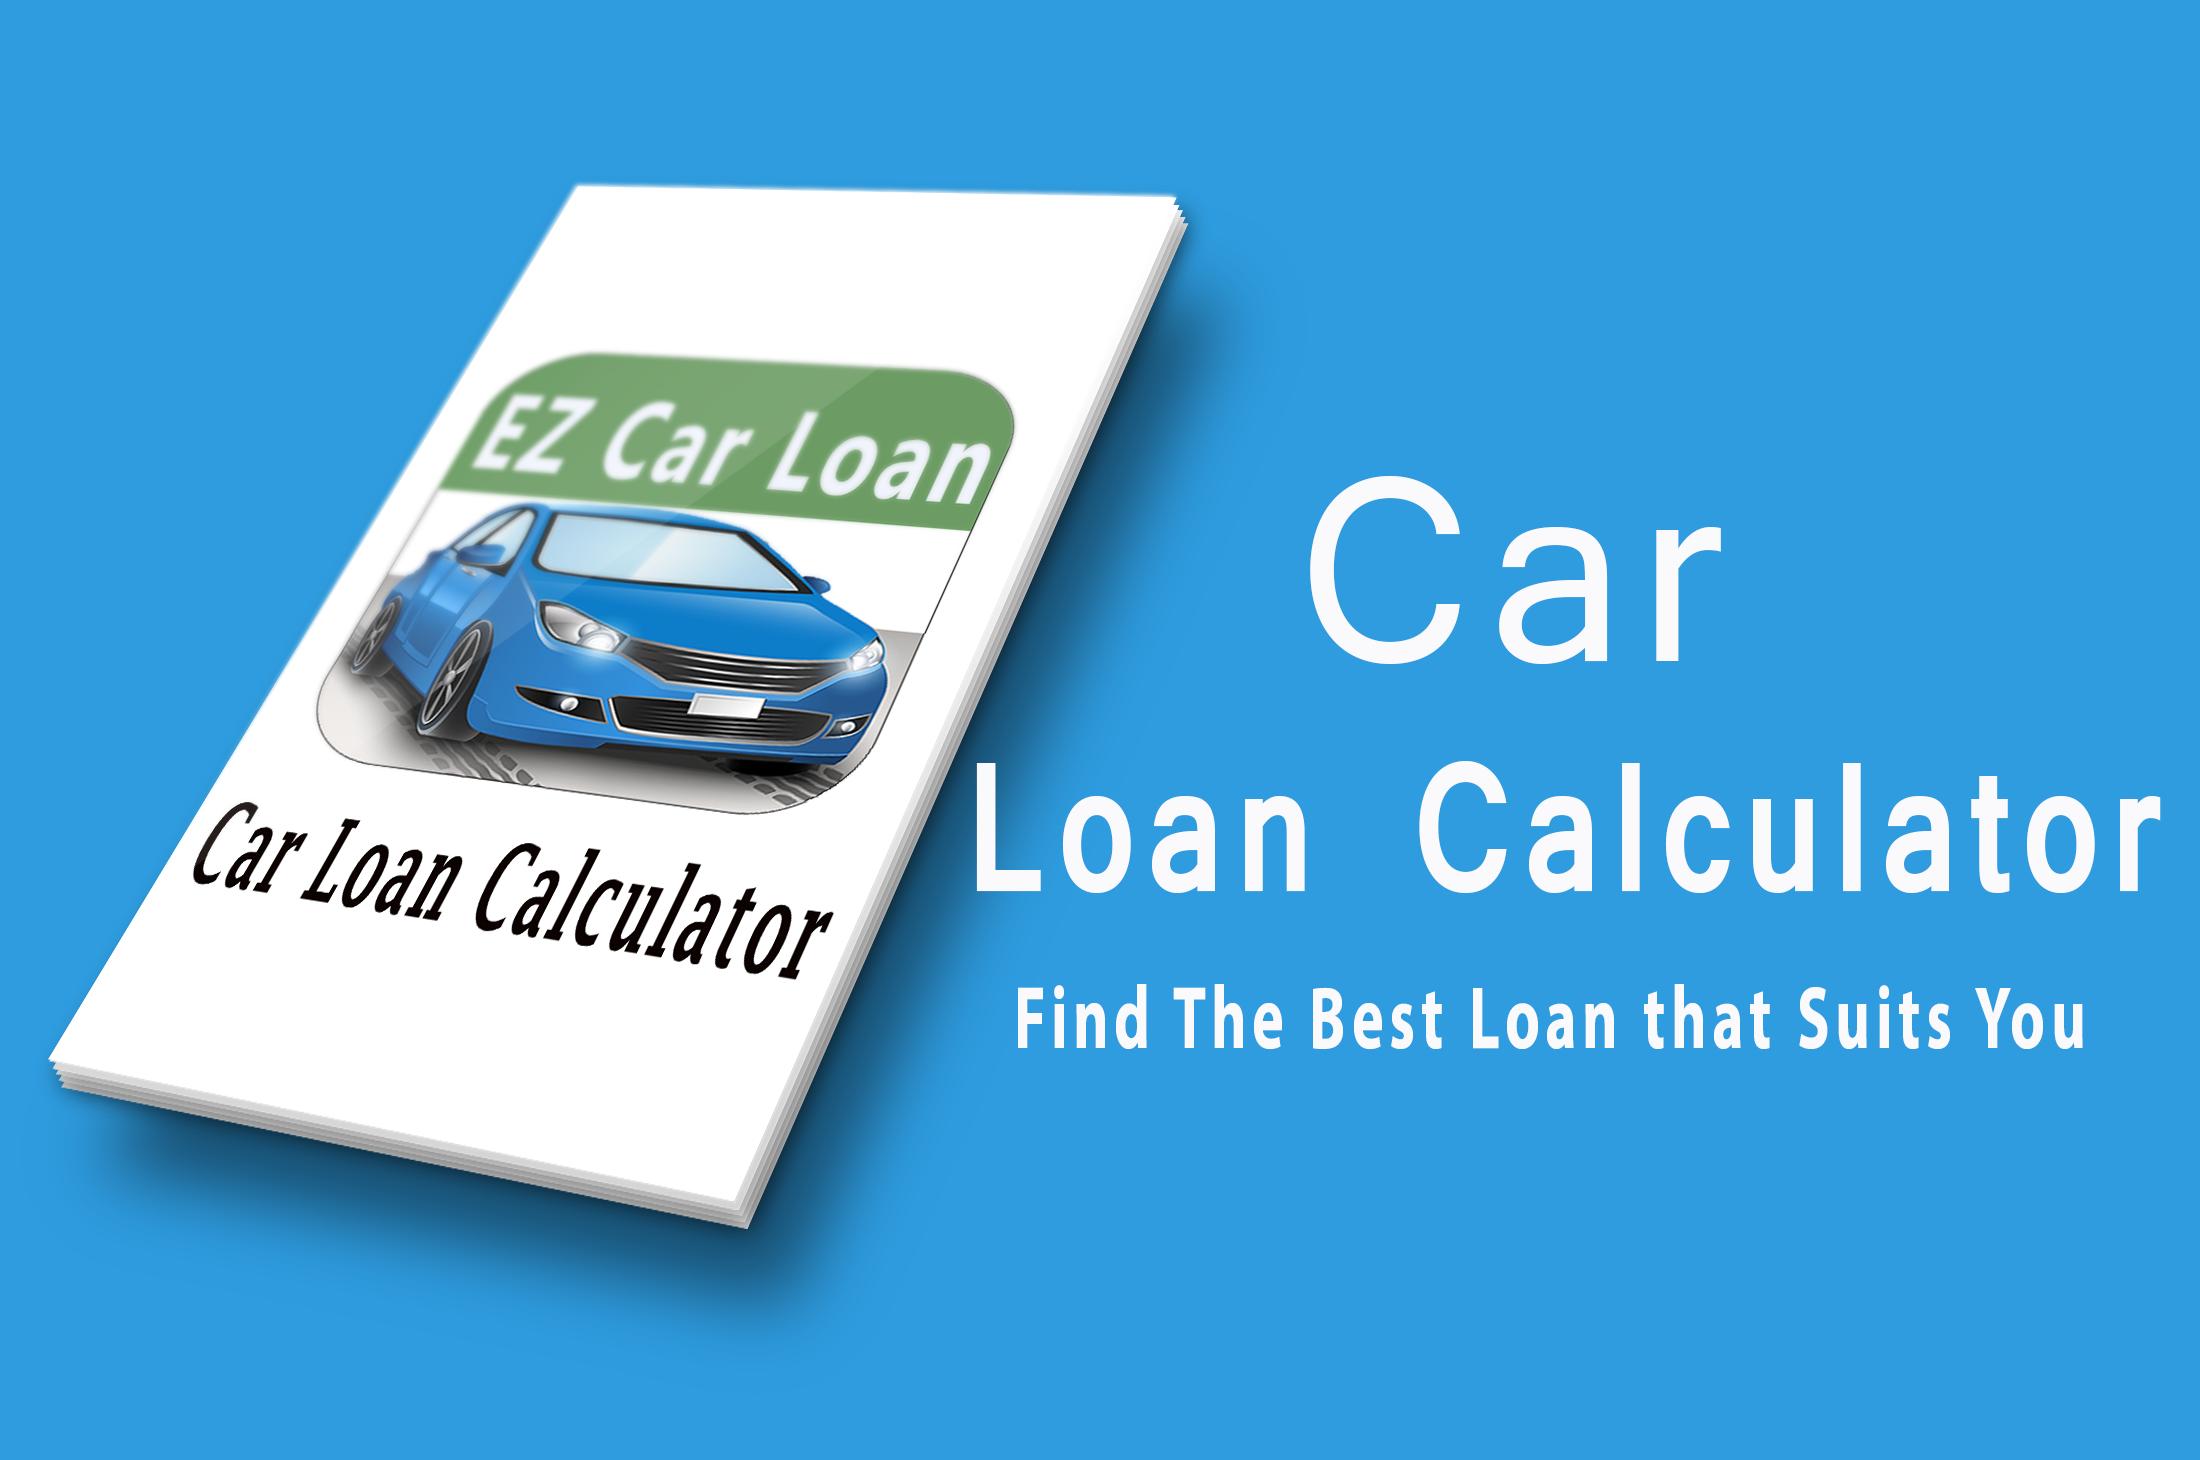 Car loan calculator